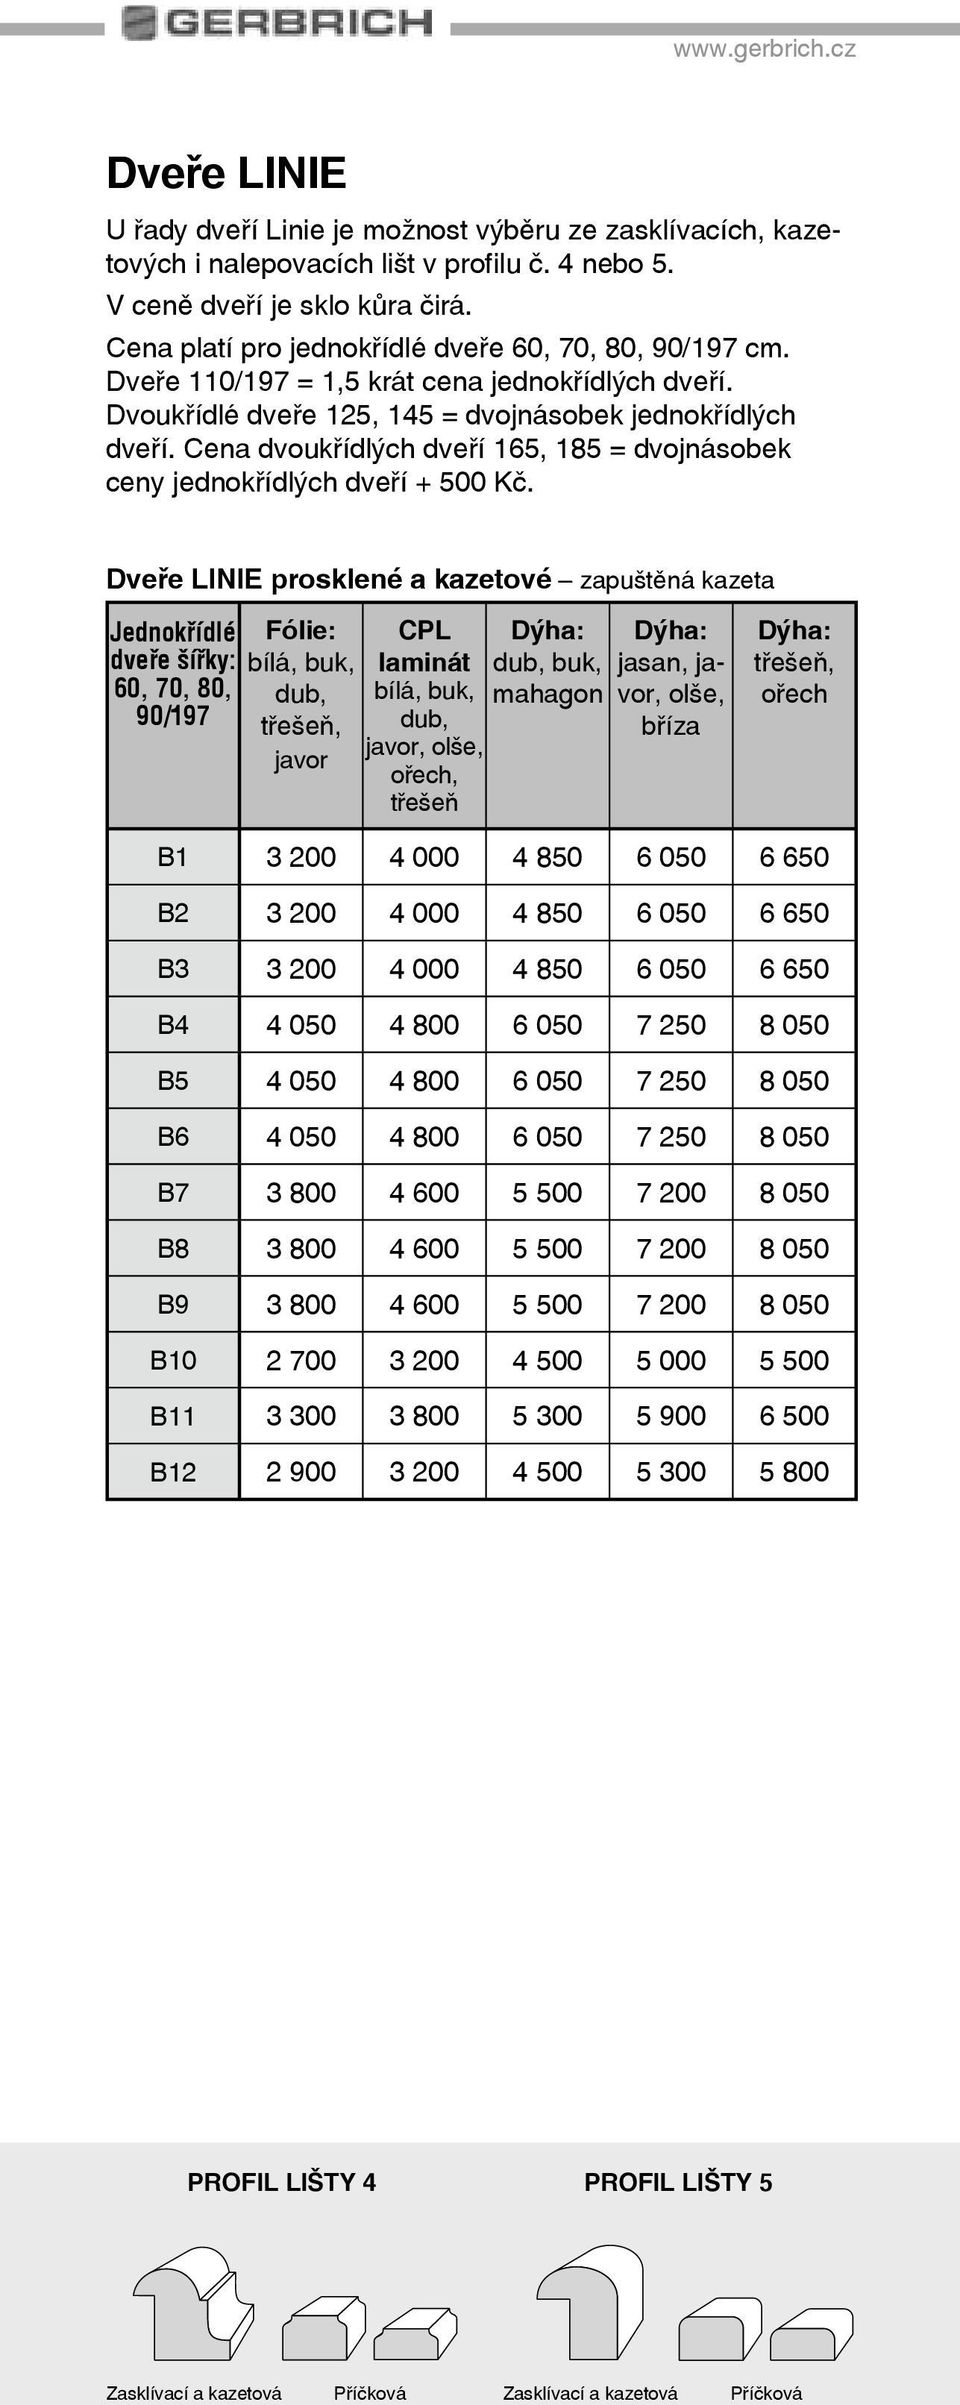 Cena dvoukøídlých dveøí 165, 185 = dvojnásobek ceny jednokøídlých dveøí + 500 Kè.